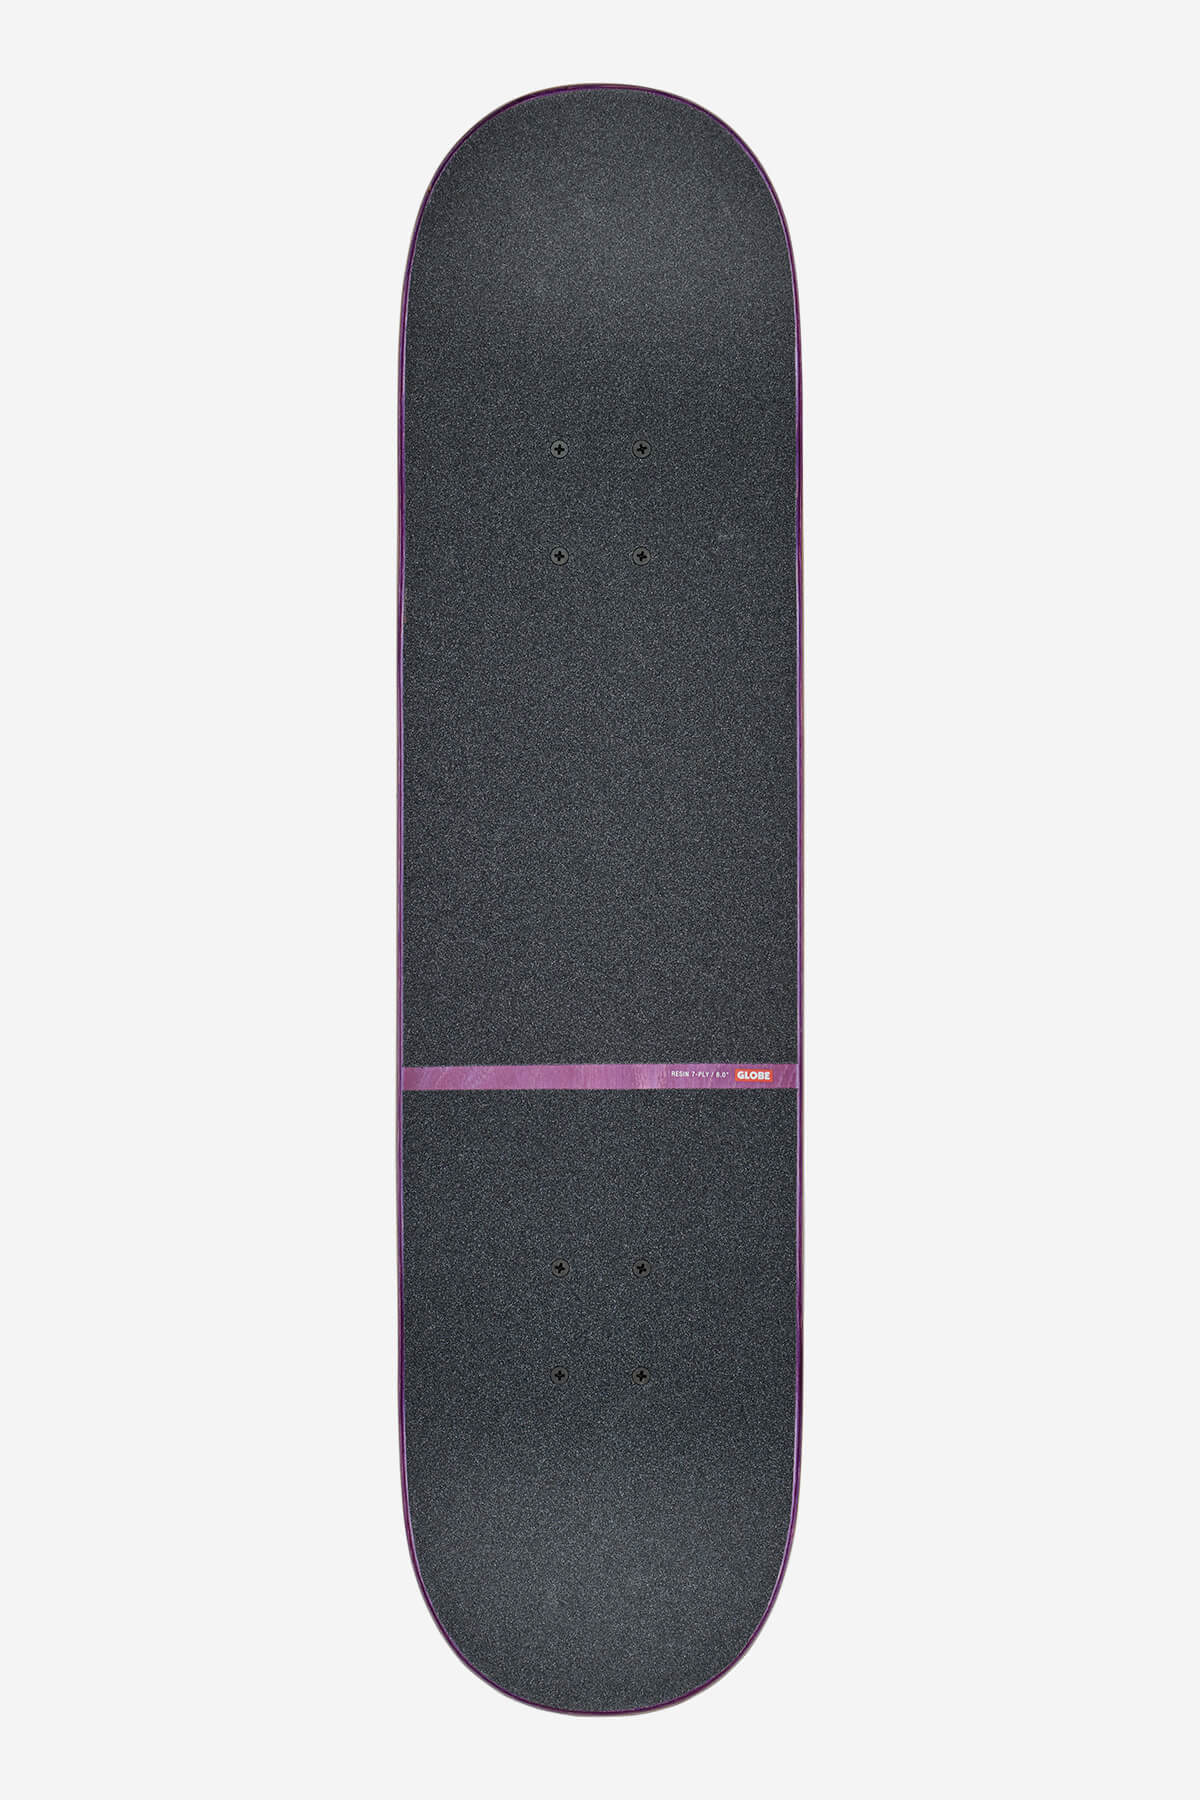 g1 orbit super natural 8.0" complet skateboard